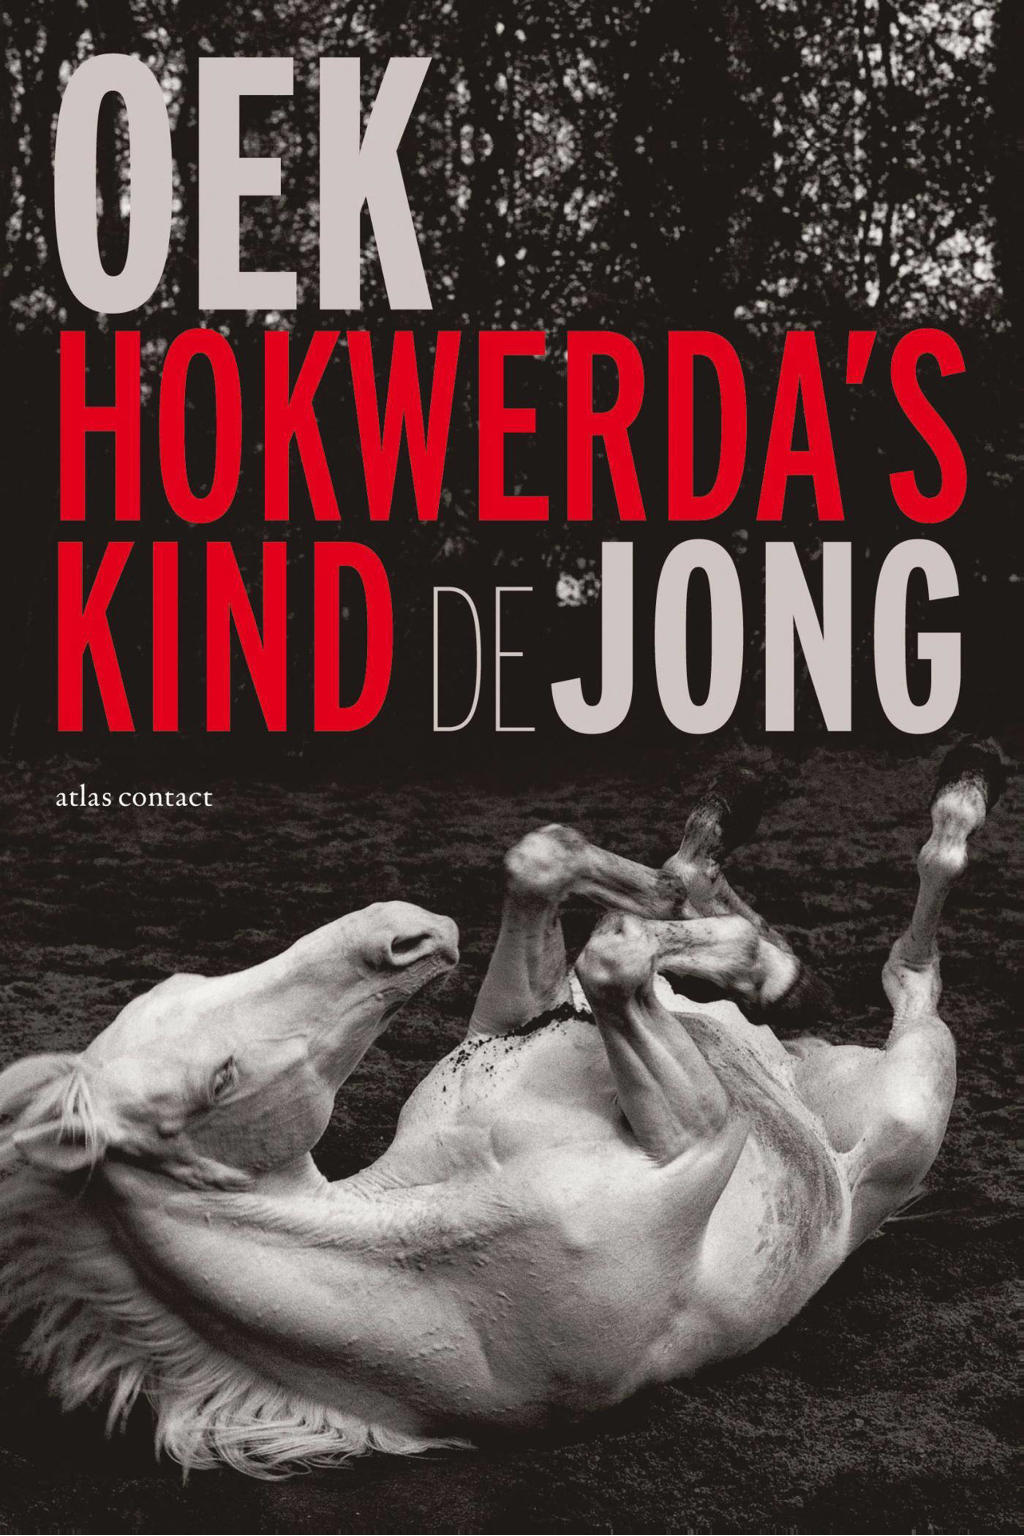 Hokwerda's kind - Oek de Jong